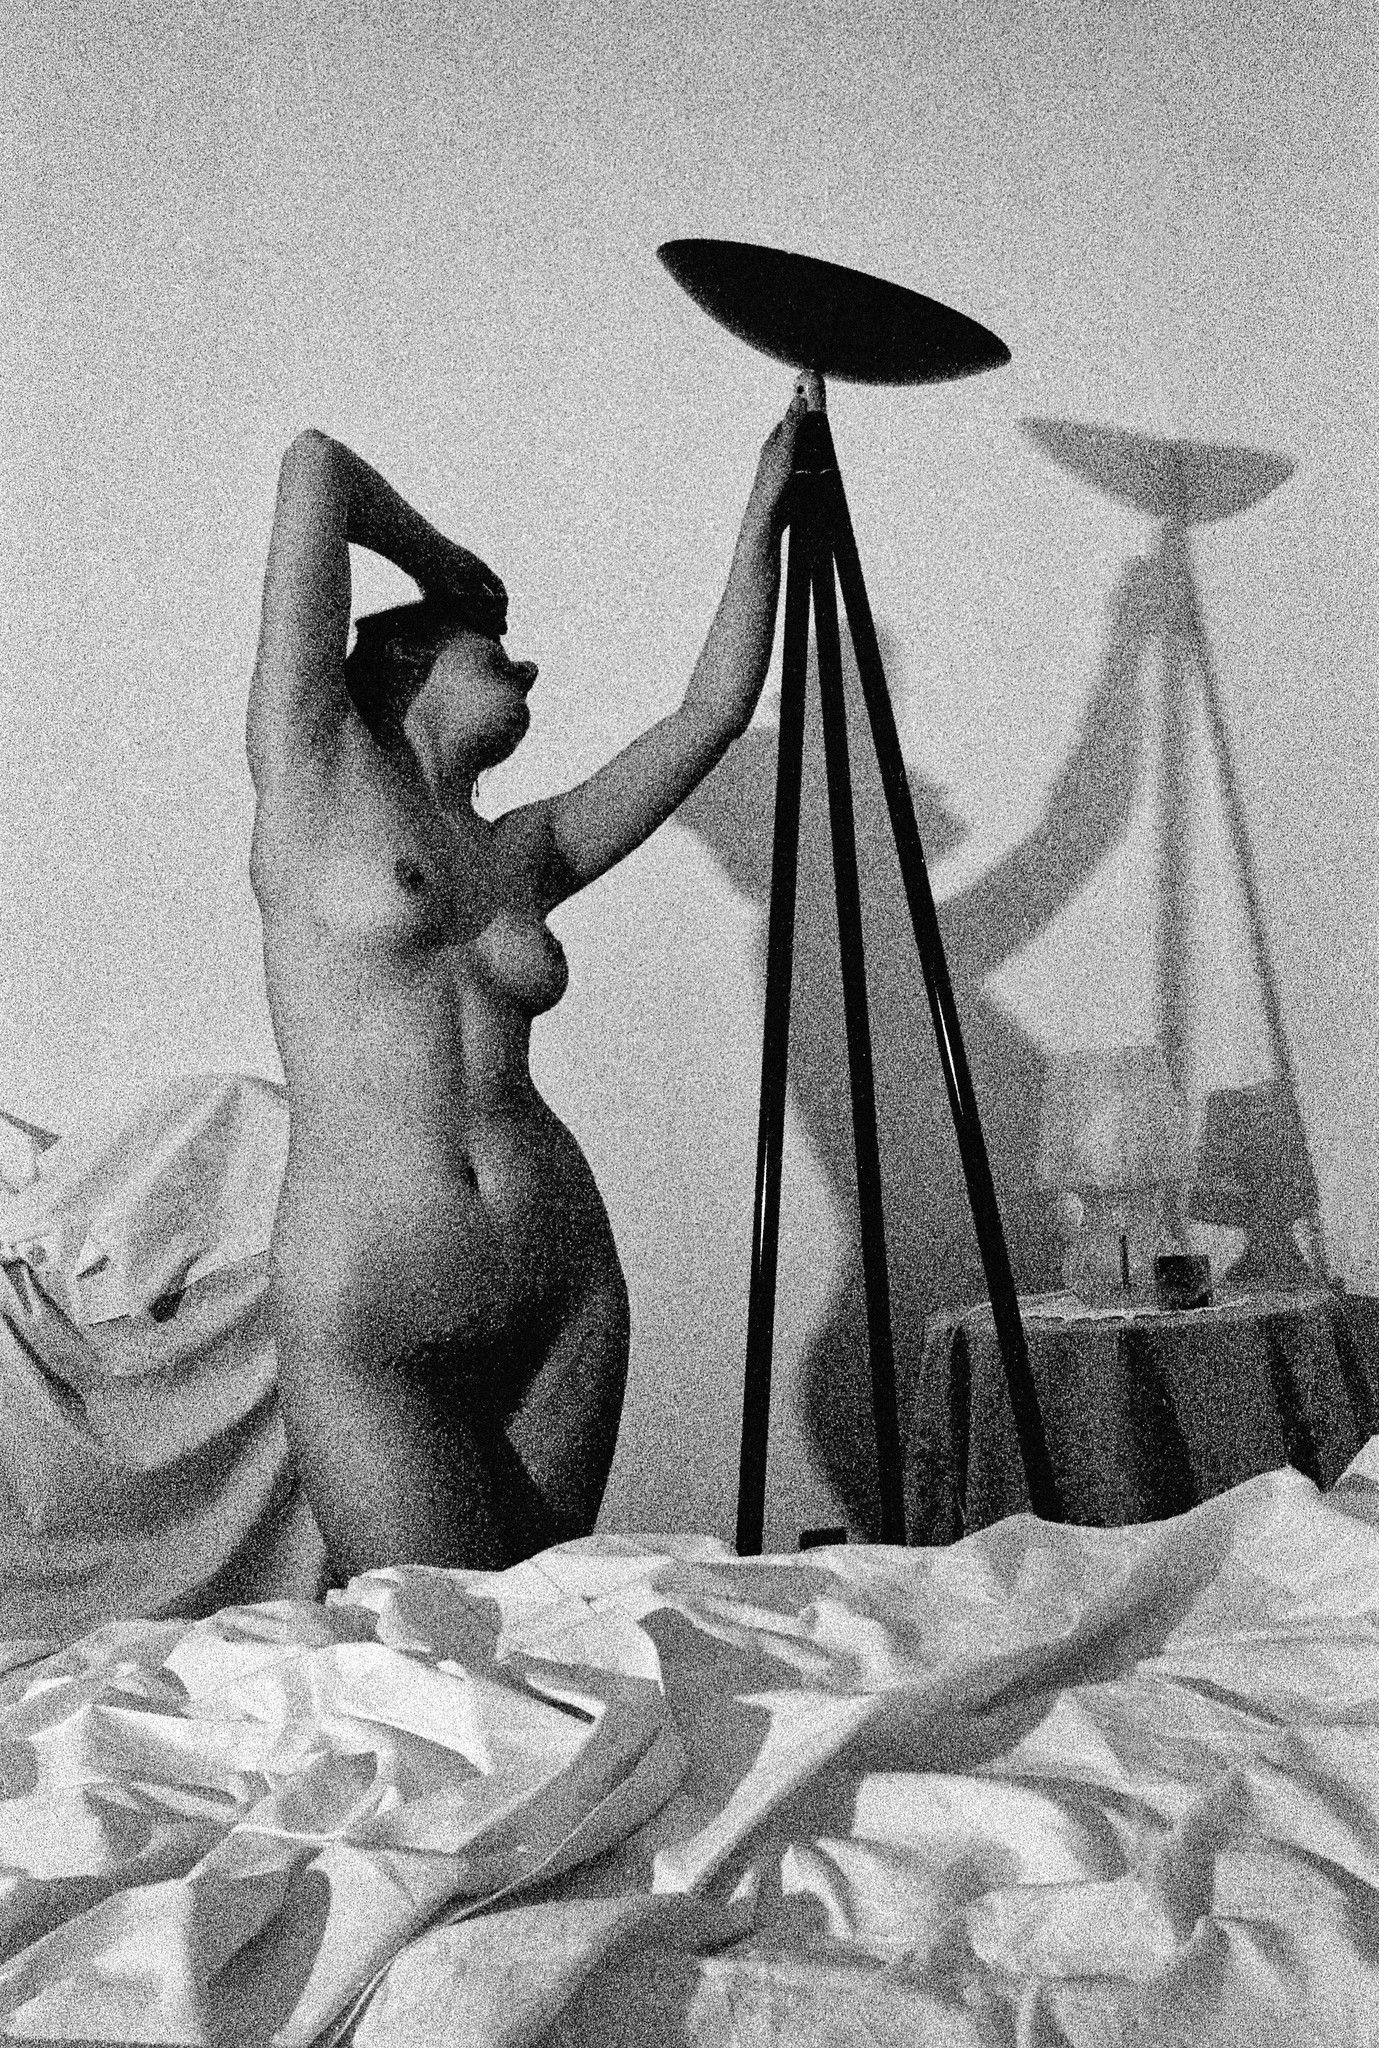 FOTOGRAFIA  GIAN CARLA FARALLI ' DIALOGO INTERNO # 7 '  dimensioni L 40 x H 30 cm.